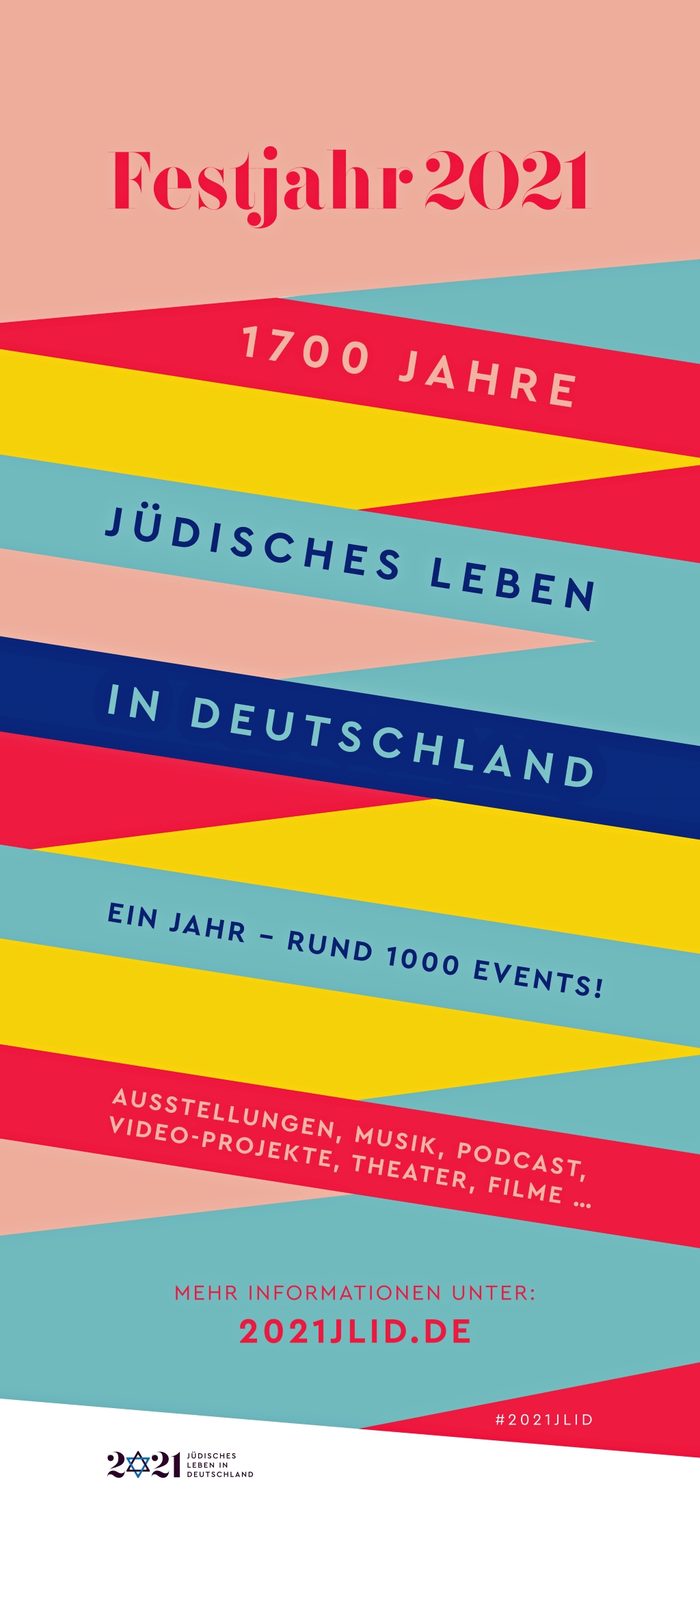 Flagge zum Festjahr 2021 mit dem Text "1700 Jahre Jüdisches Leben in Deutschland"